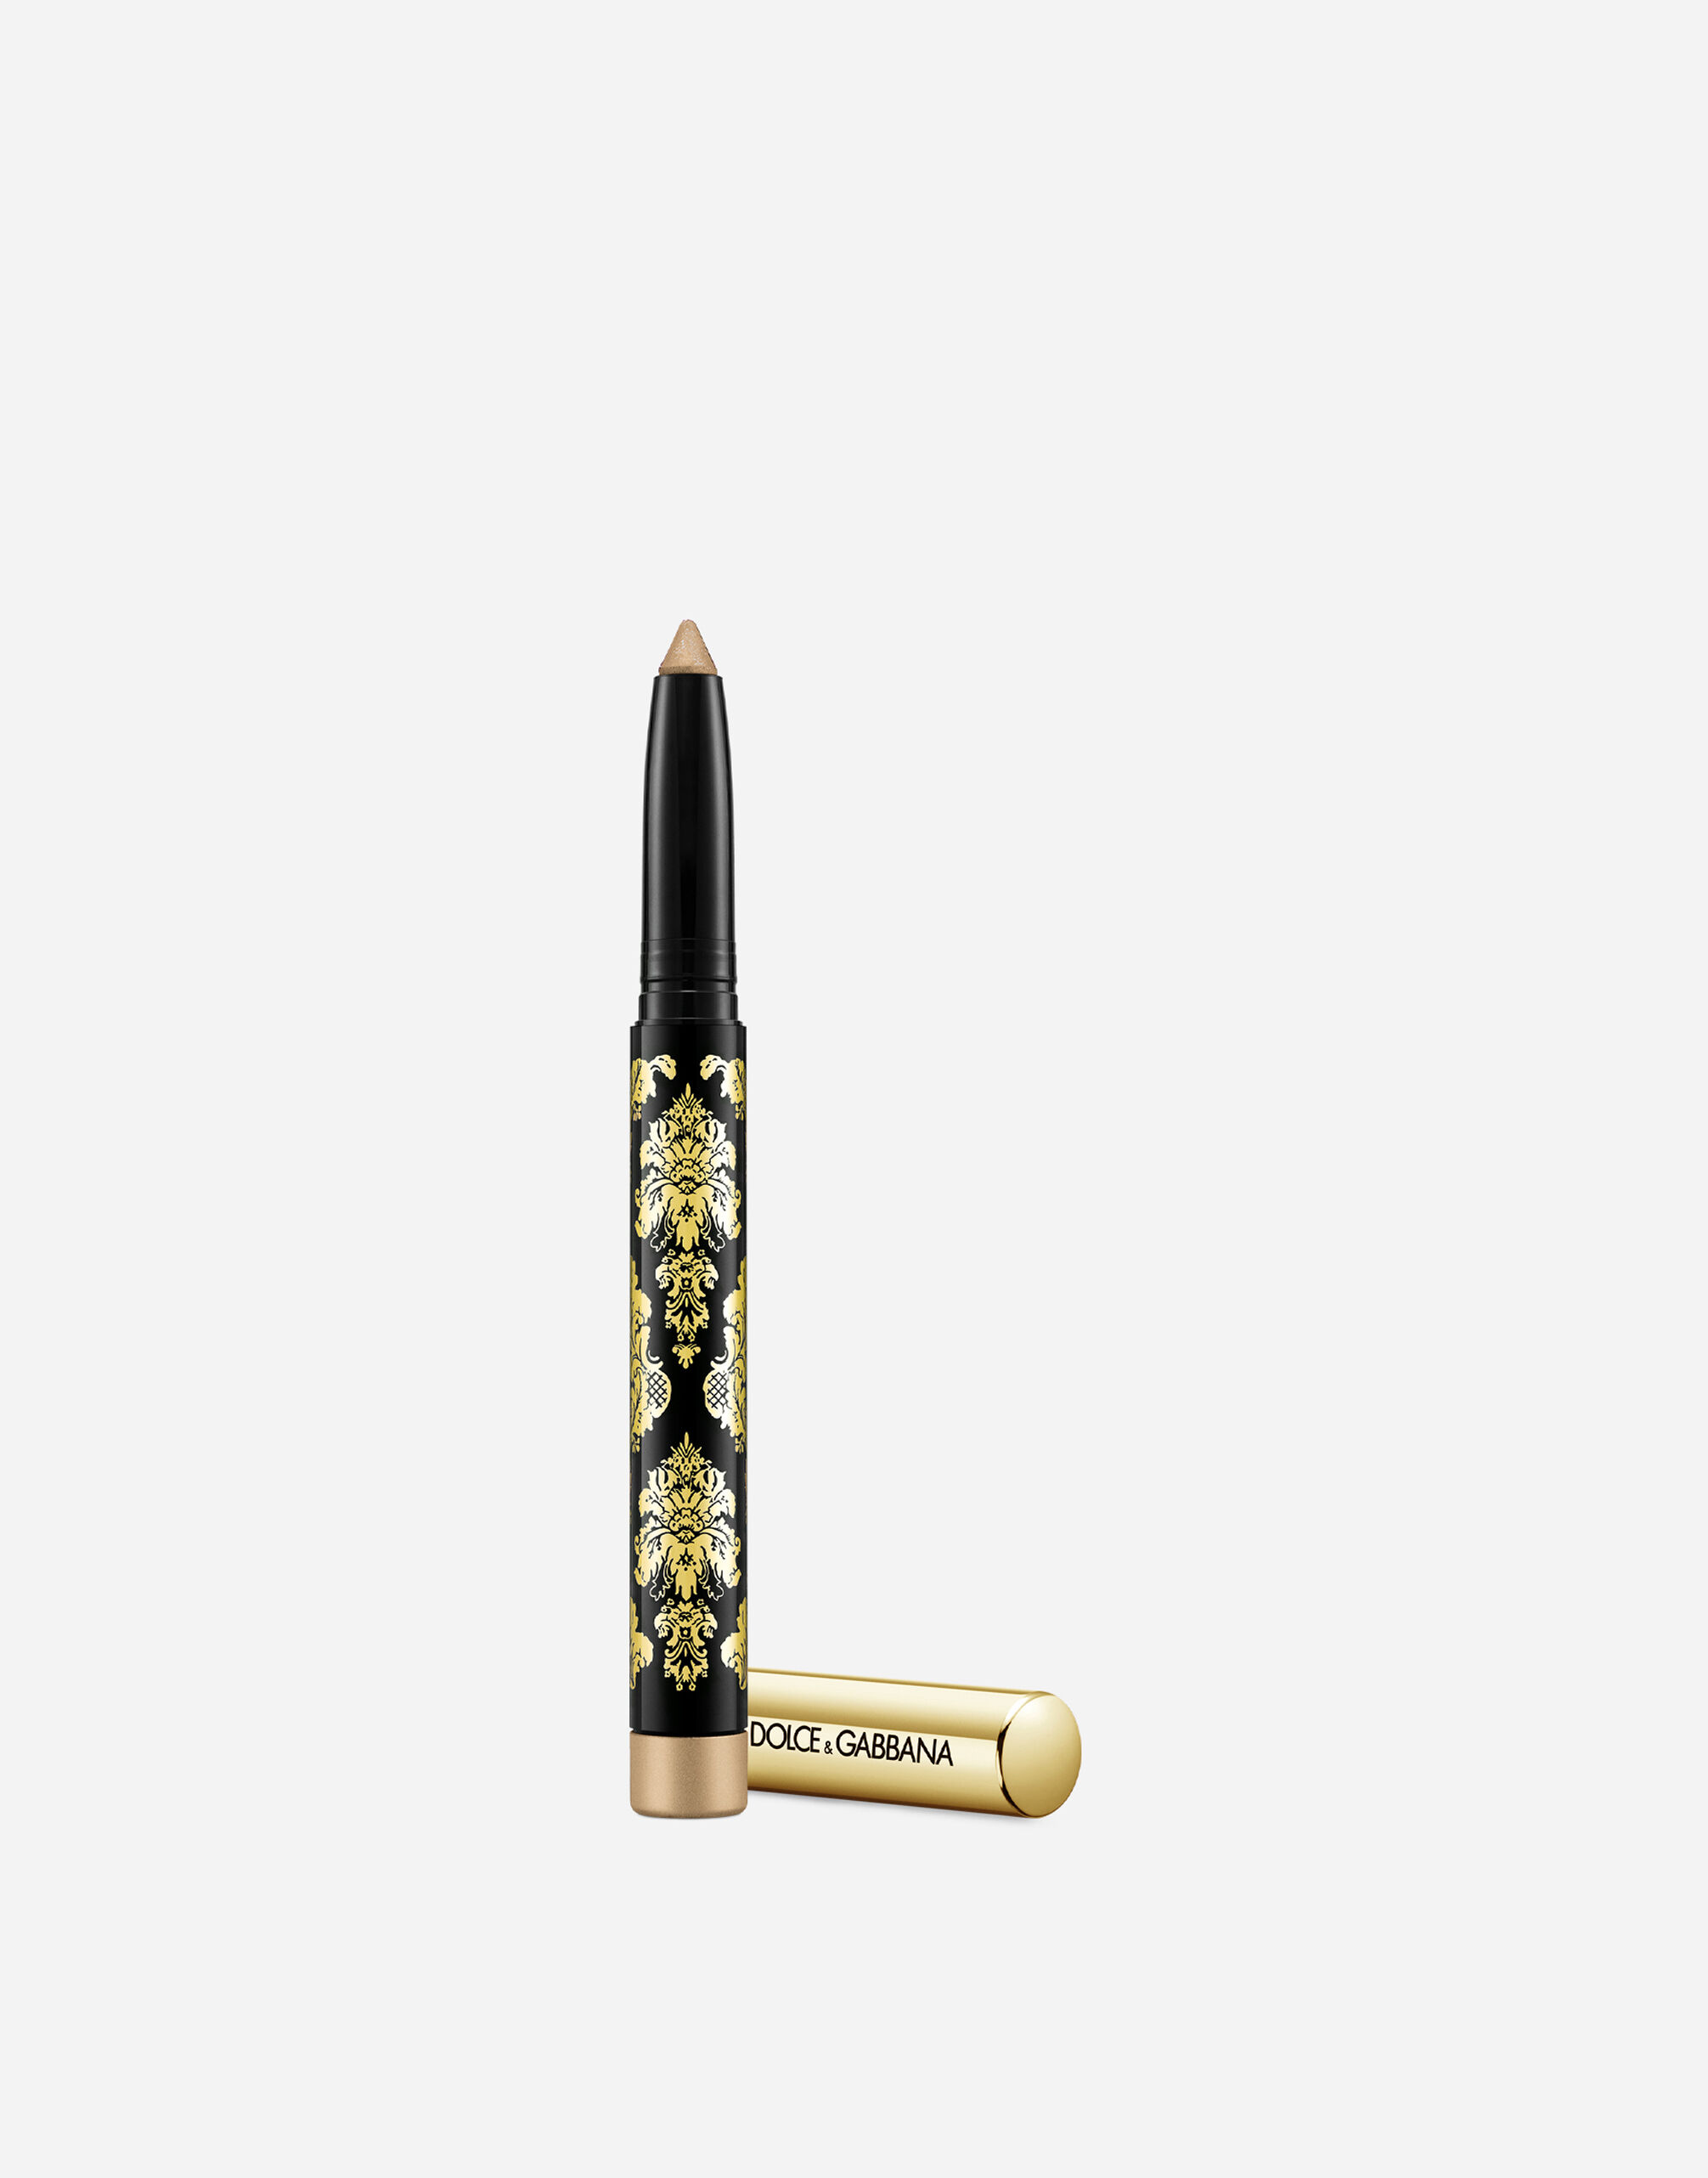 Тени-карандаш для глаз Dolce & Gabbana Intenseyes кремовые, №5 Taupe, 1,4 г ультрастойкие тени карандаш – 02 шампань бежевый